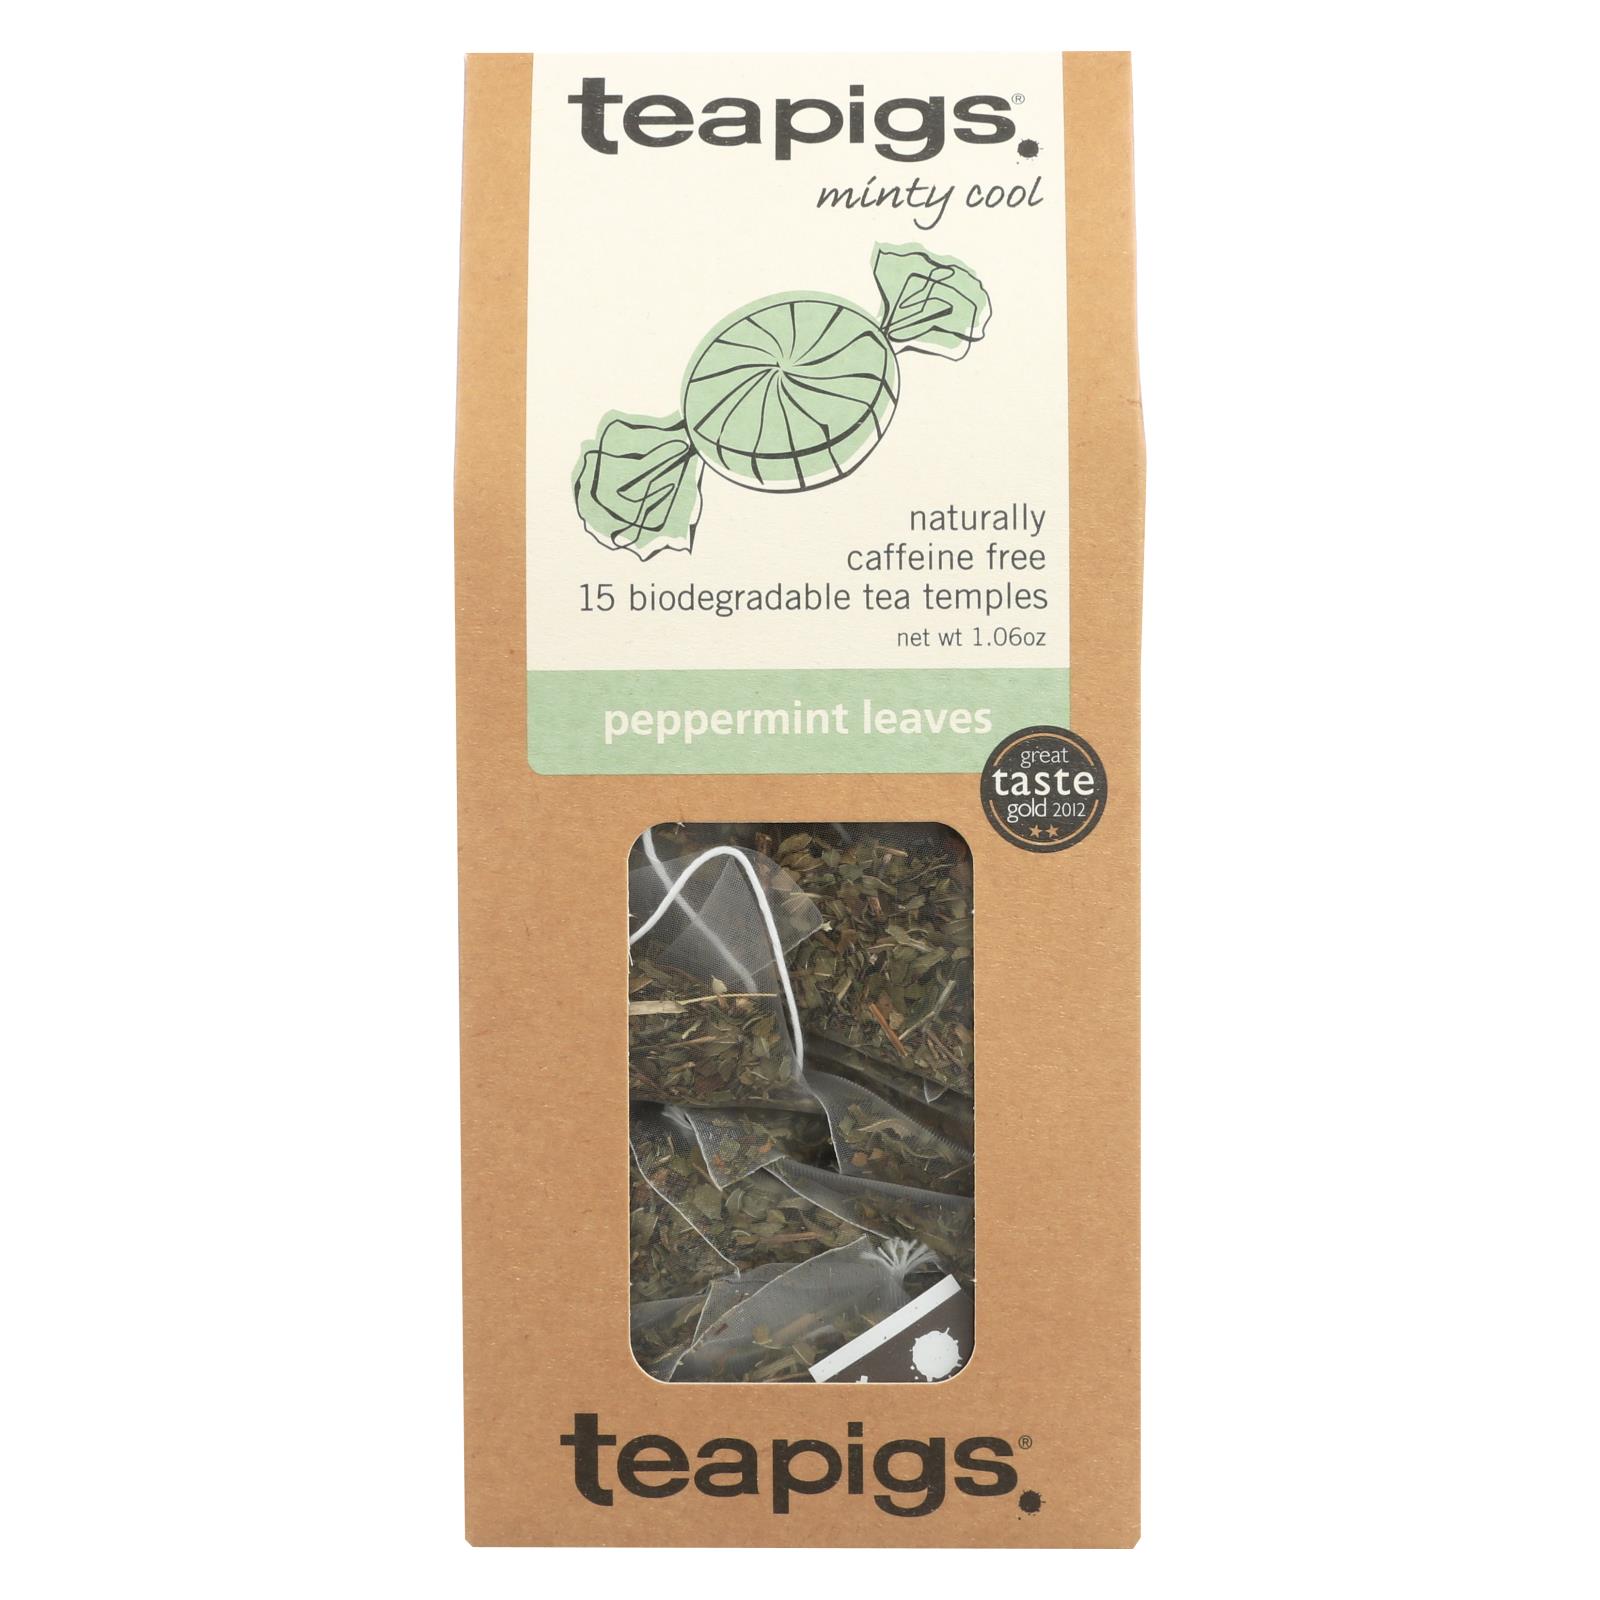 Teapigs Peppermint Leaves Minty Cool Tea - 6개 묶음상품 - 15 CT